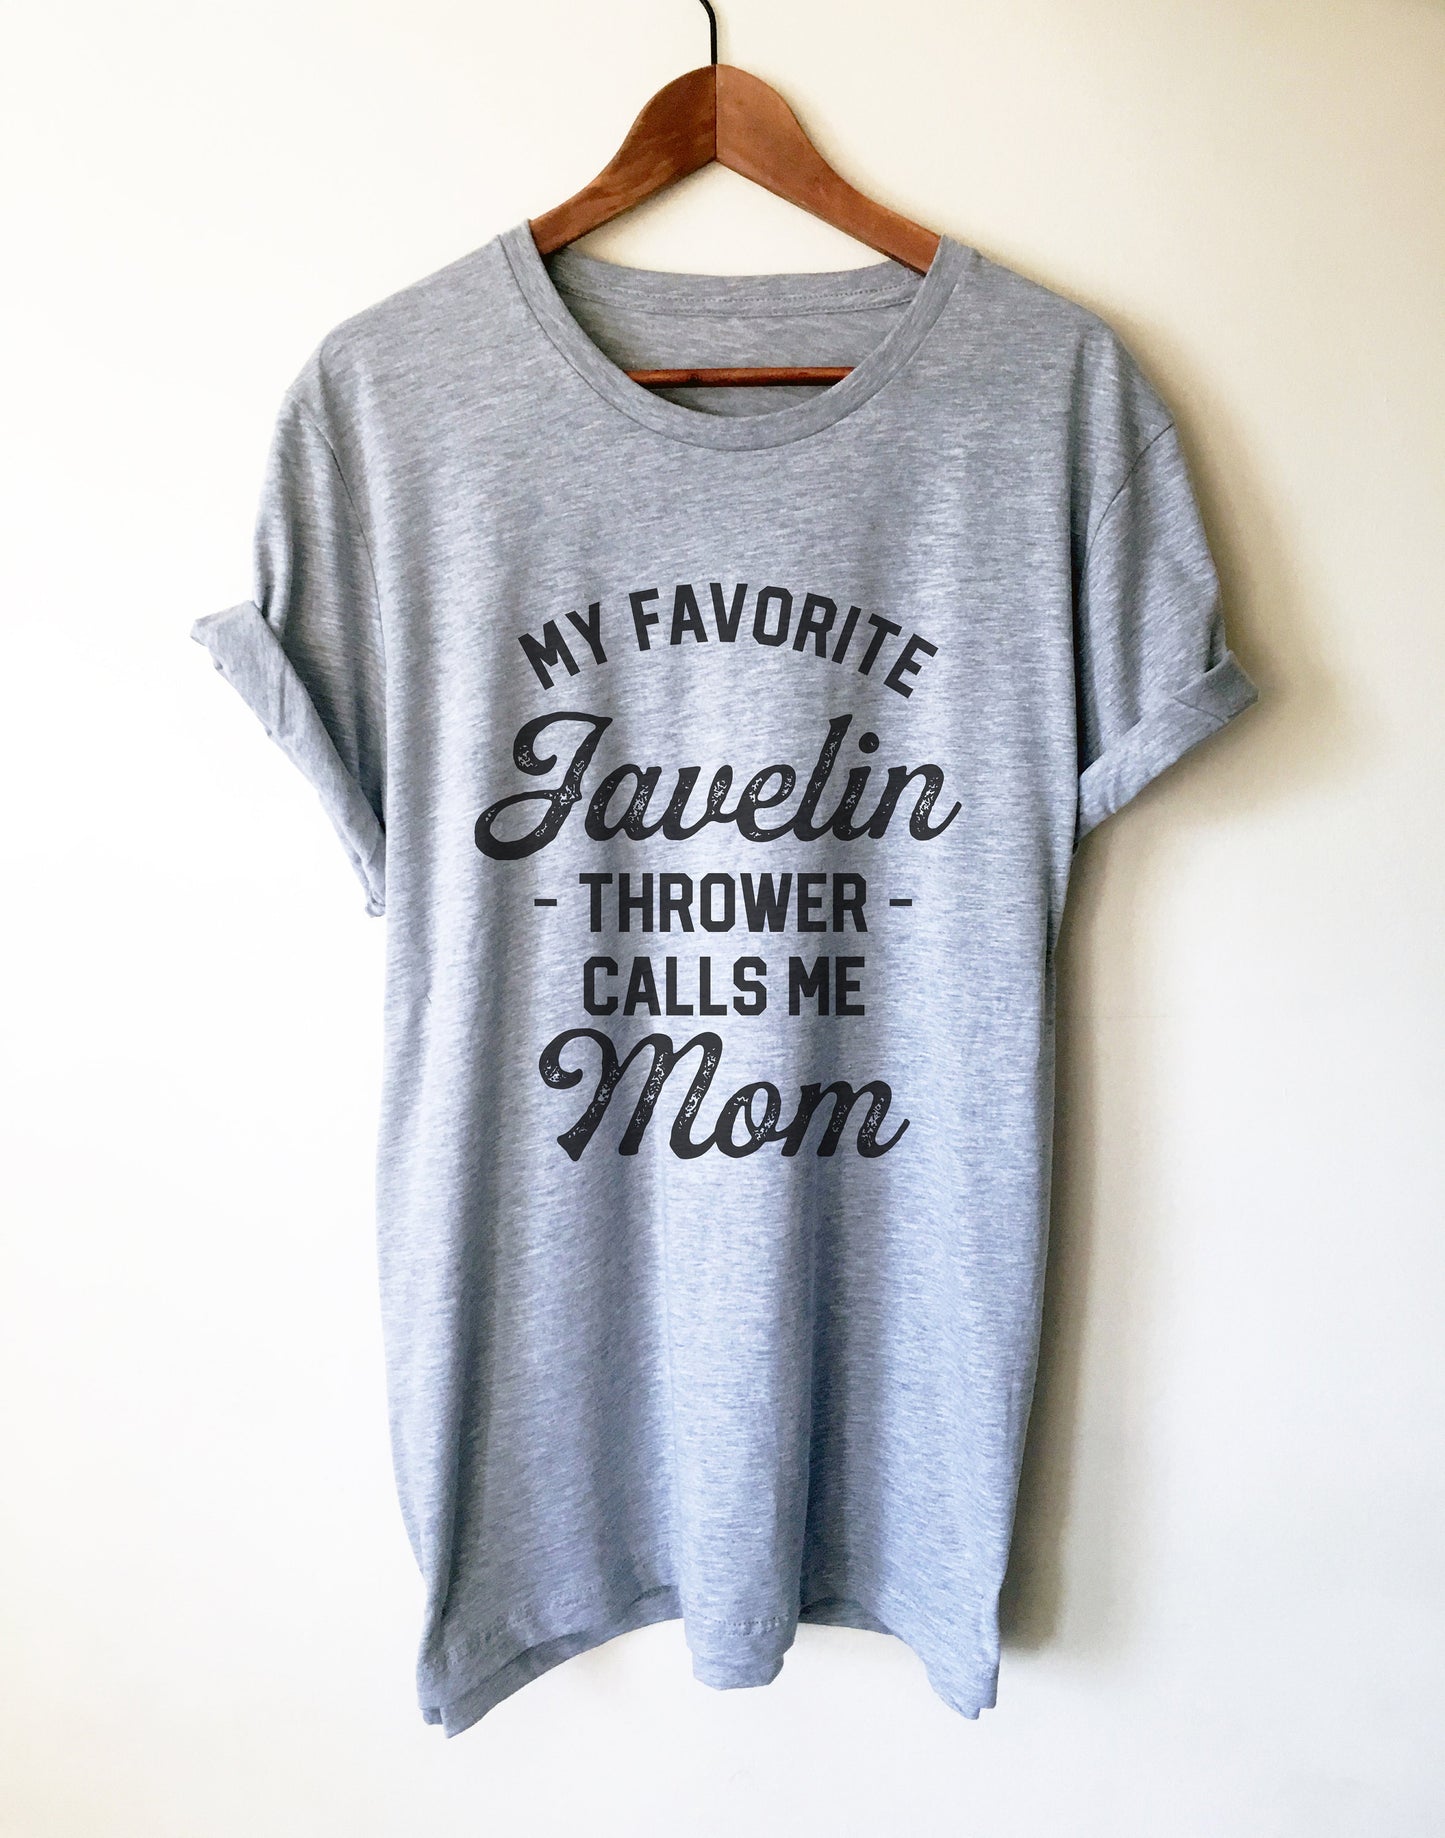 My Favorite Javelin Thrower Calls Me Mom Unisex Shirt - Javelin Shirt, Javelin Gift, Track And Field Gift, Throw Happy, Sports Mom Shirt